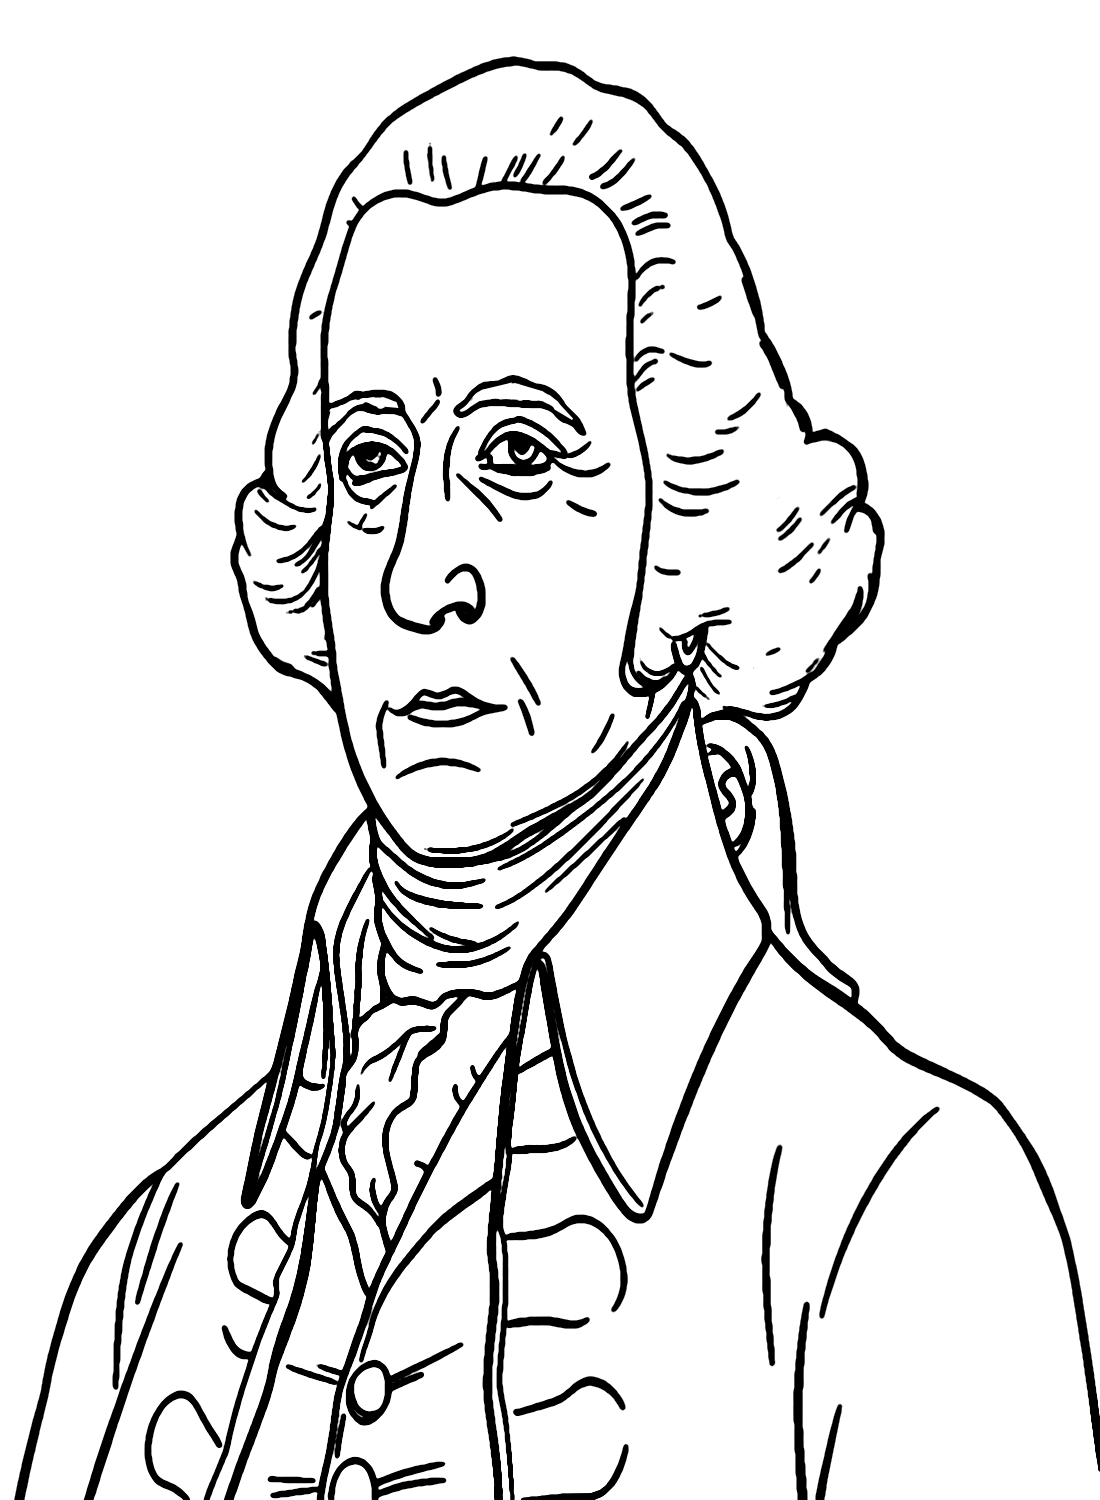 Alexander Hamilton para impressão de Alexander Hamilton